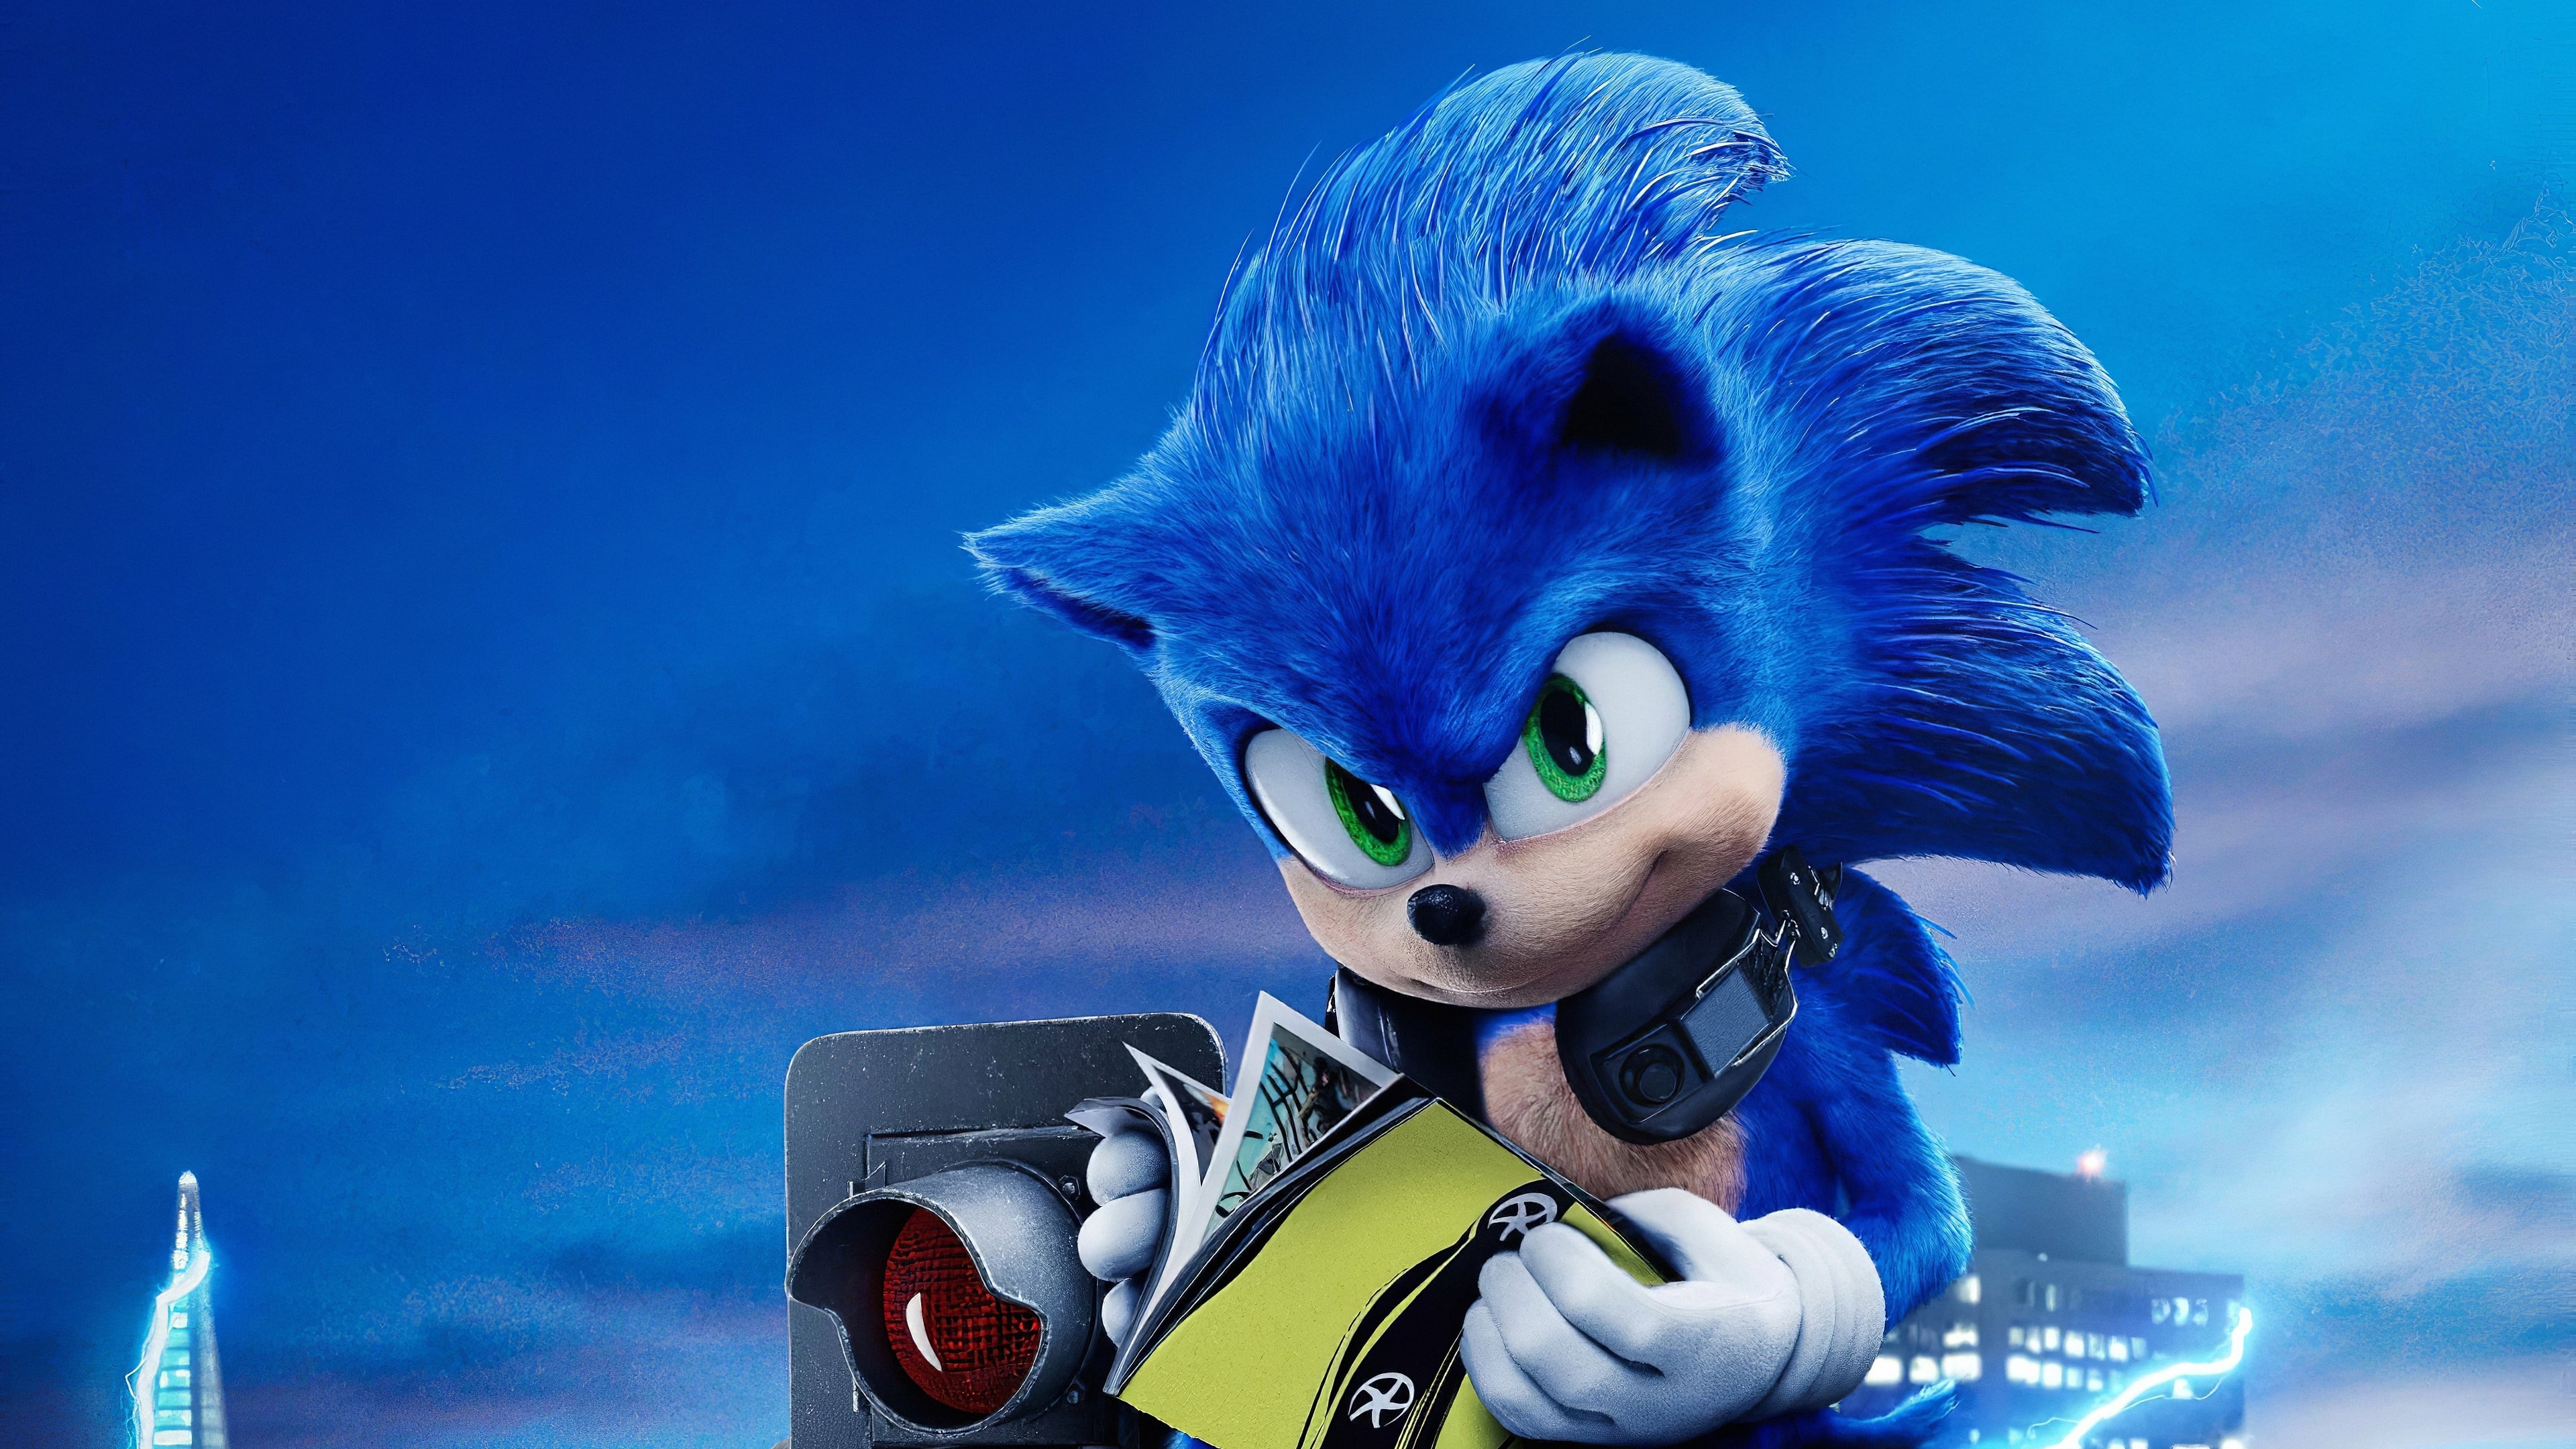 Sonic - Il film (2020)